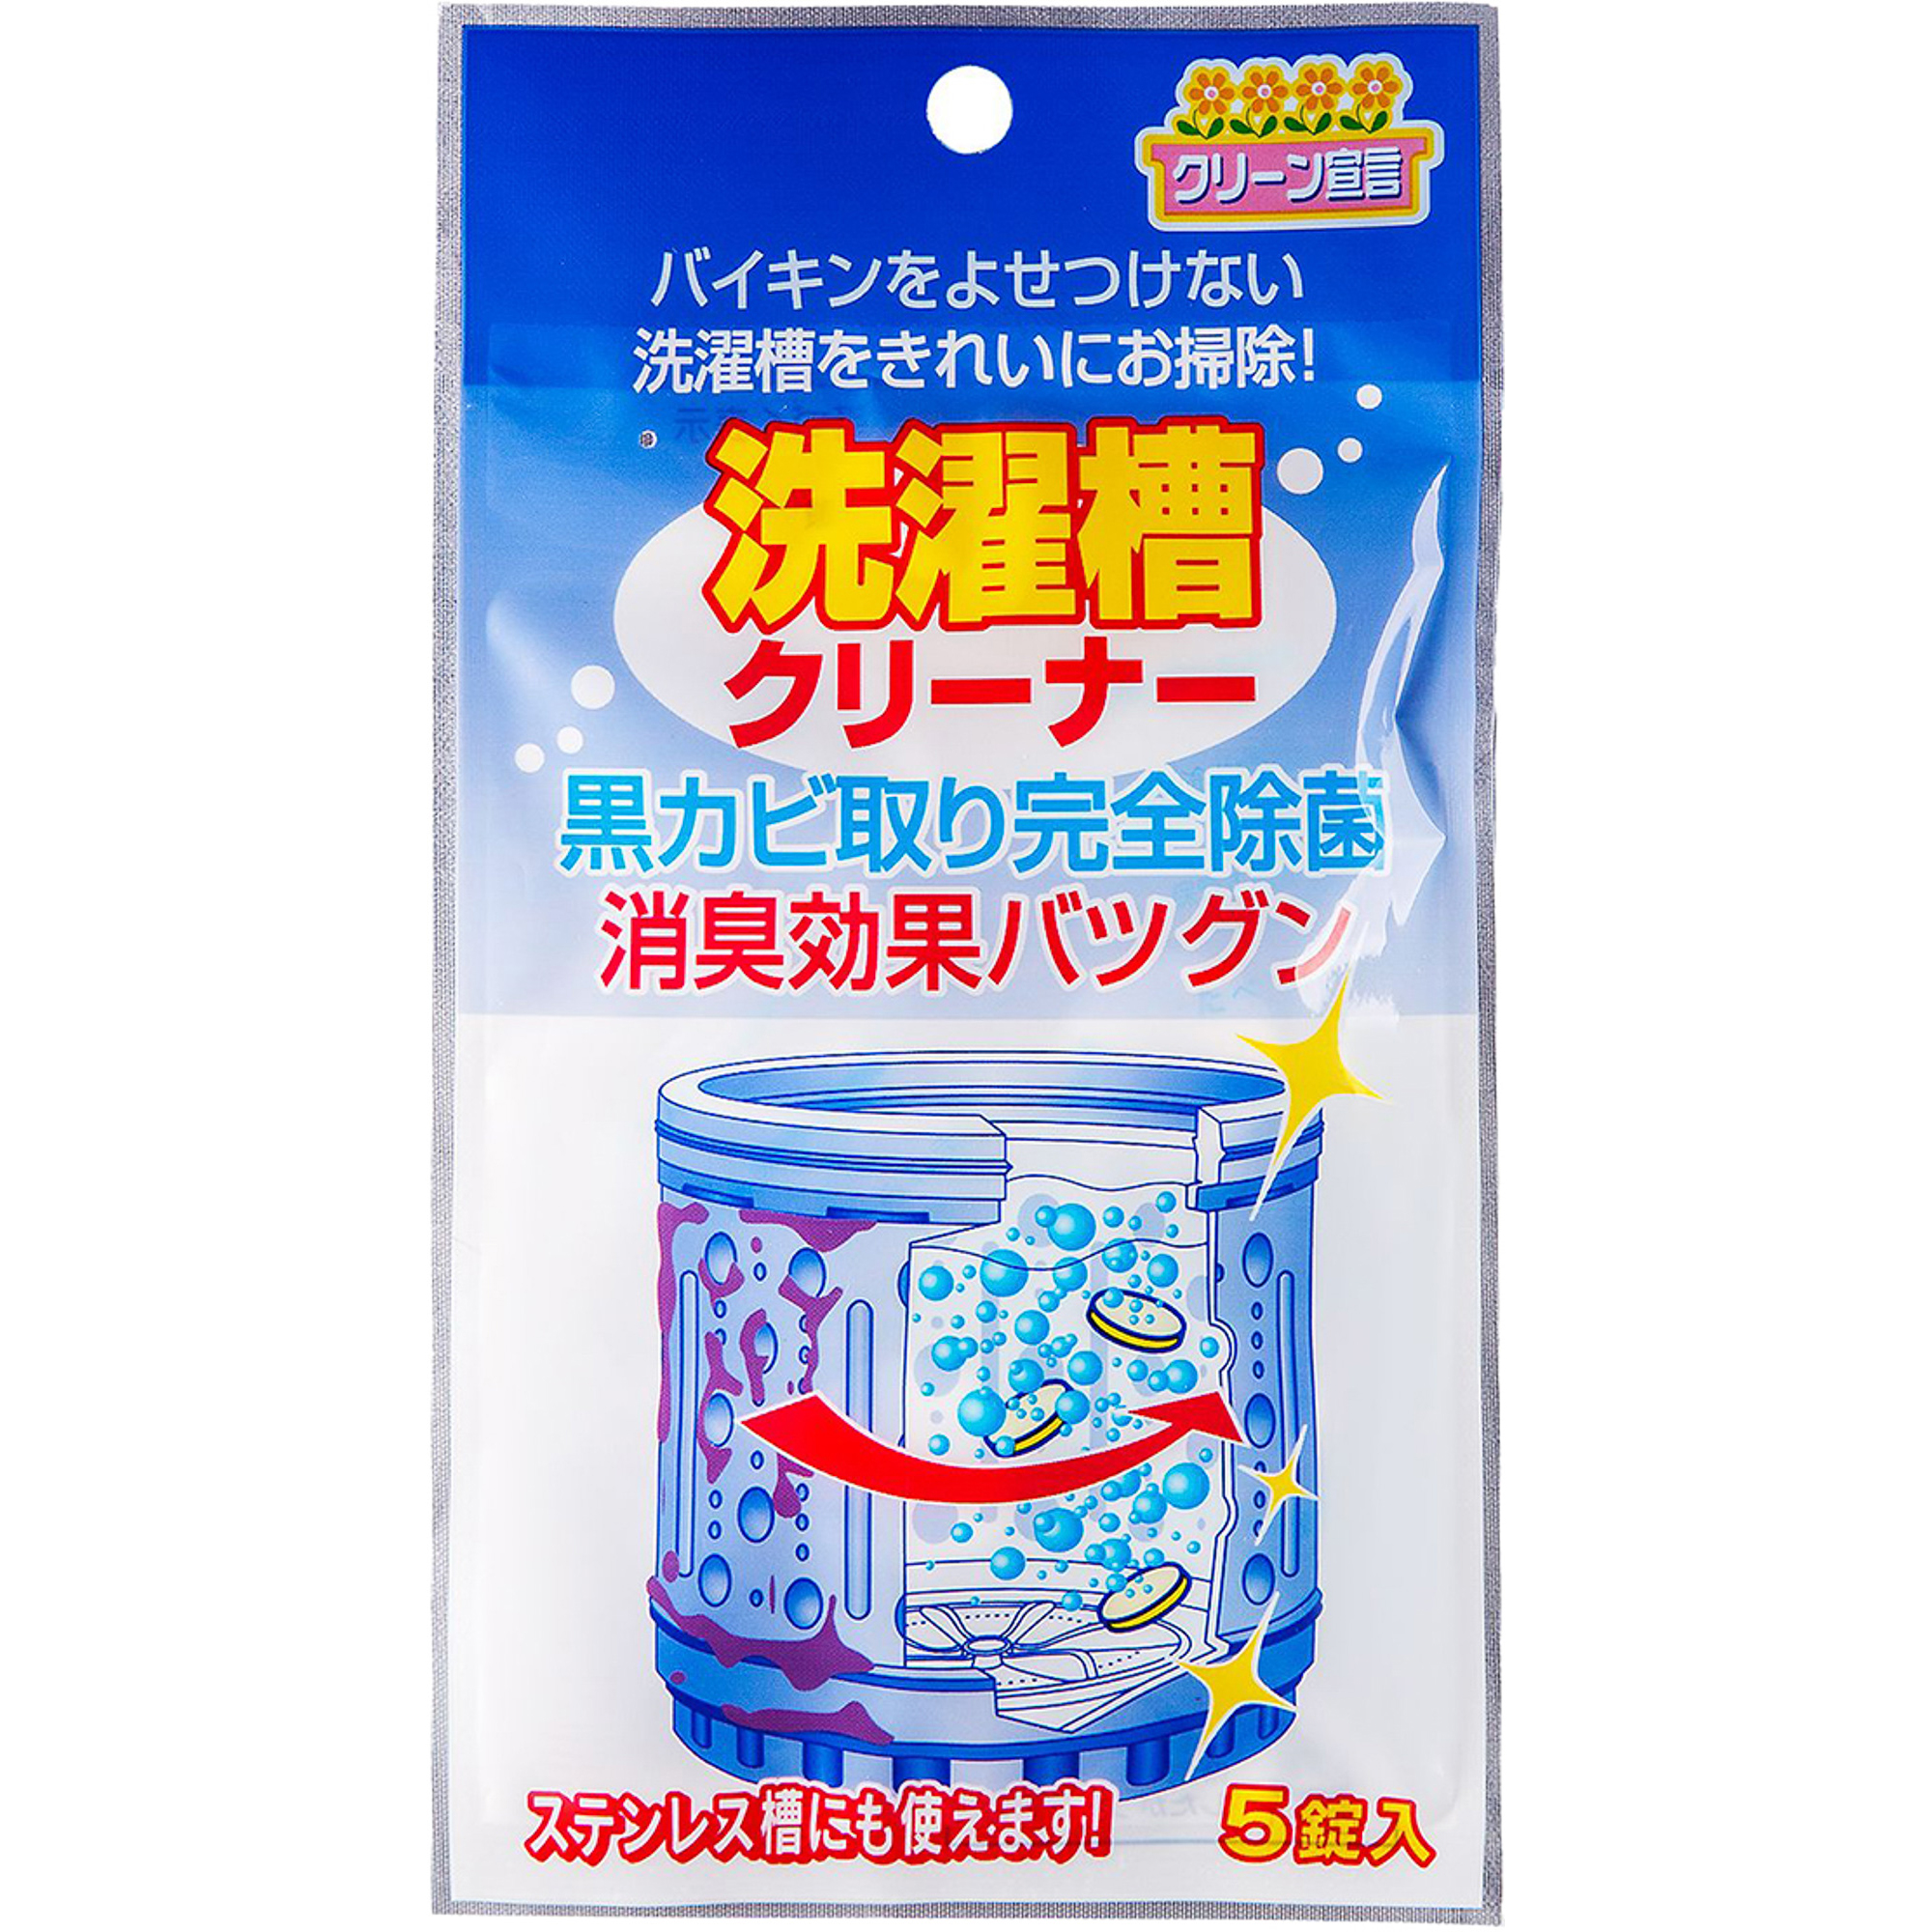 Средство Nagara Cleaning Liquid для чистки барабанов 4г x 5шт средство чистящее gel corporation для барабанов стиральных машин антибактериальное 400 мл